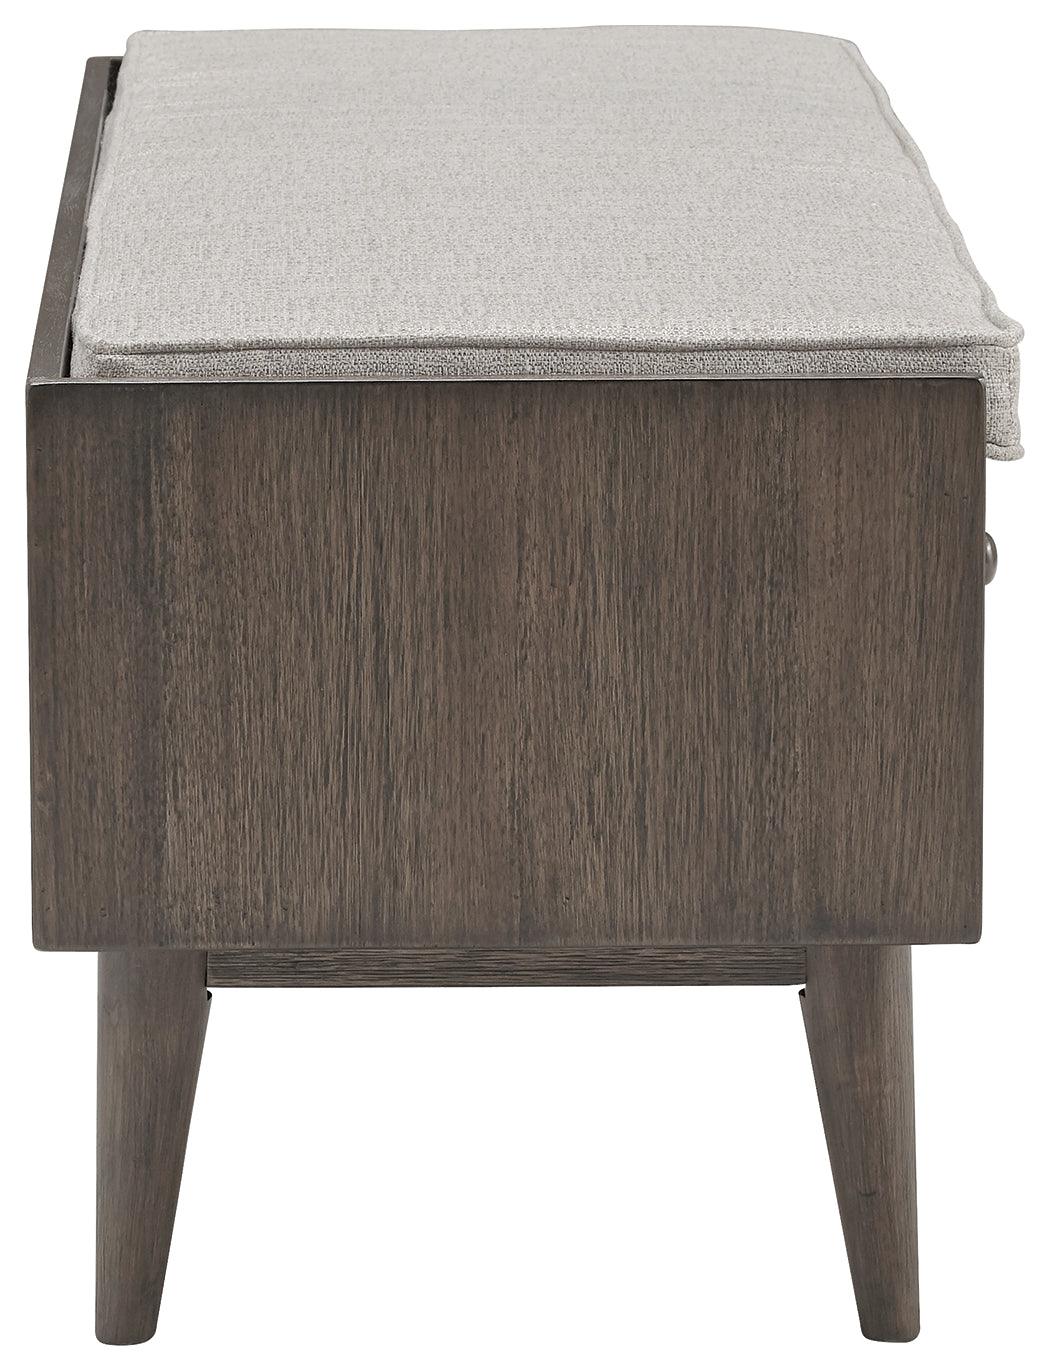 Chetfield Beige/brown Storage Bench - Ella Furniture